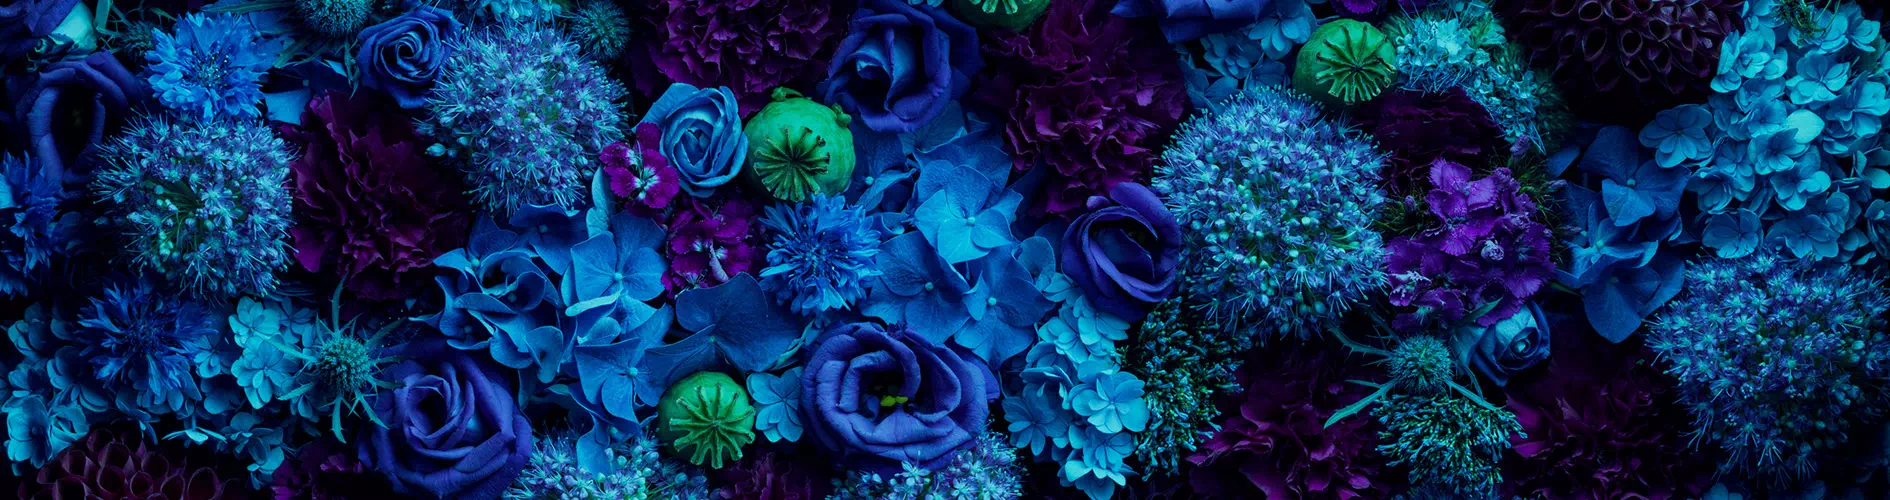 Kwiaty w niebieskich odcieniach